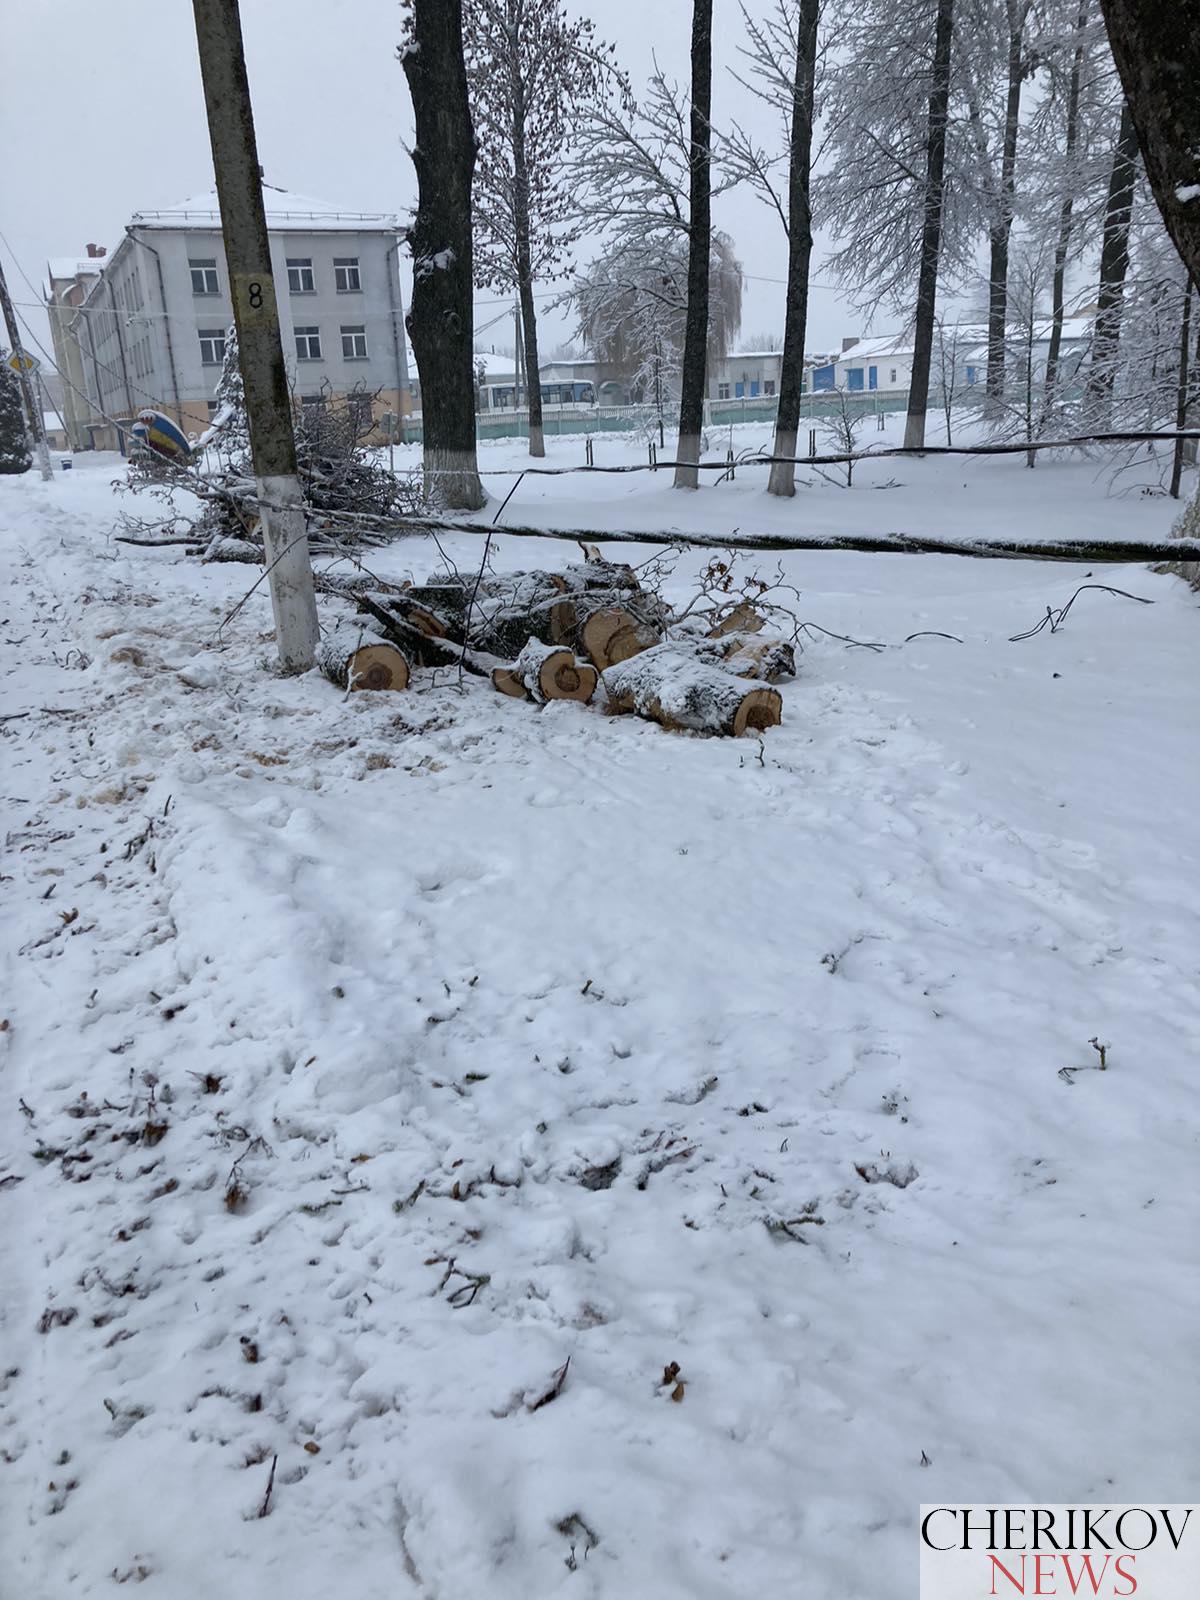 Последствия снегопада в Чериковском районе: электричество есть, но не везде